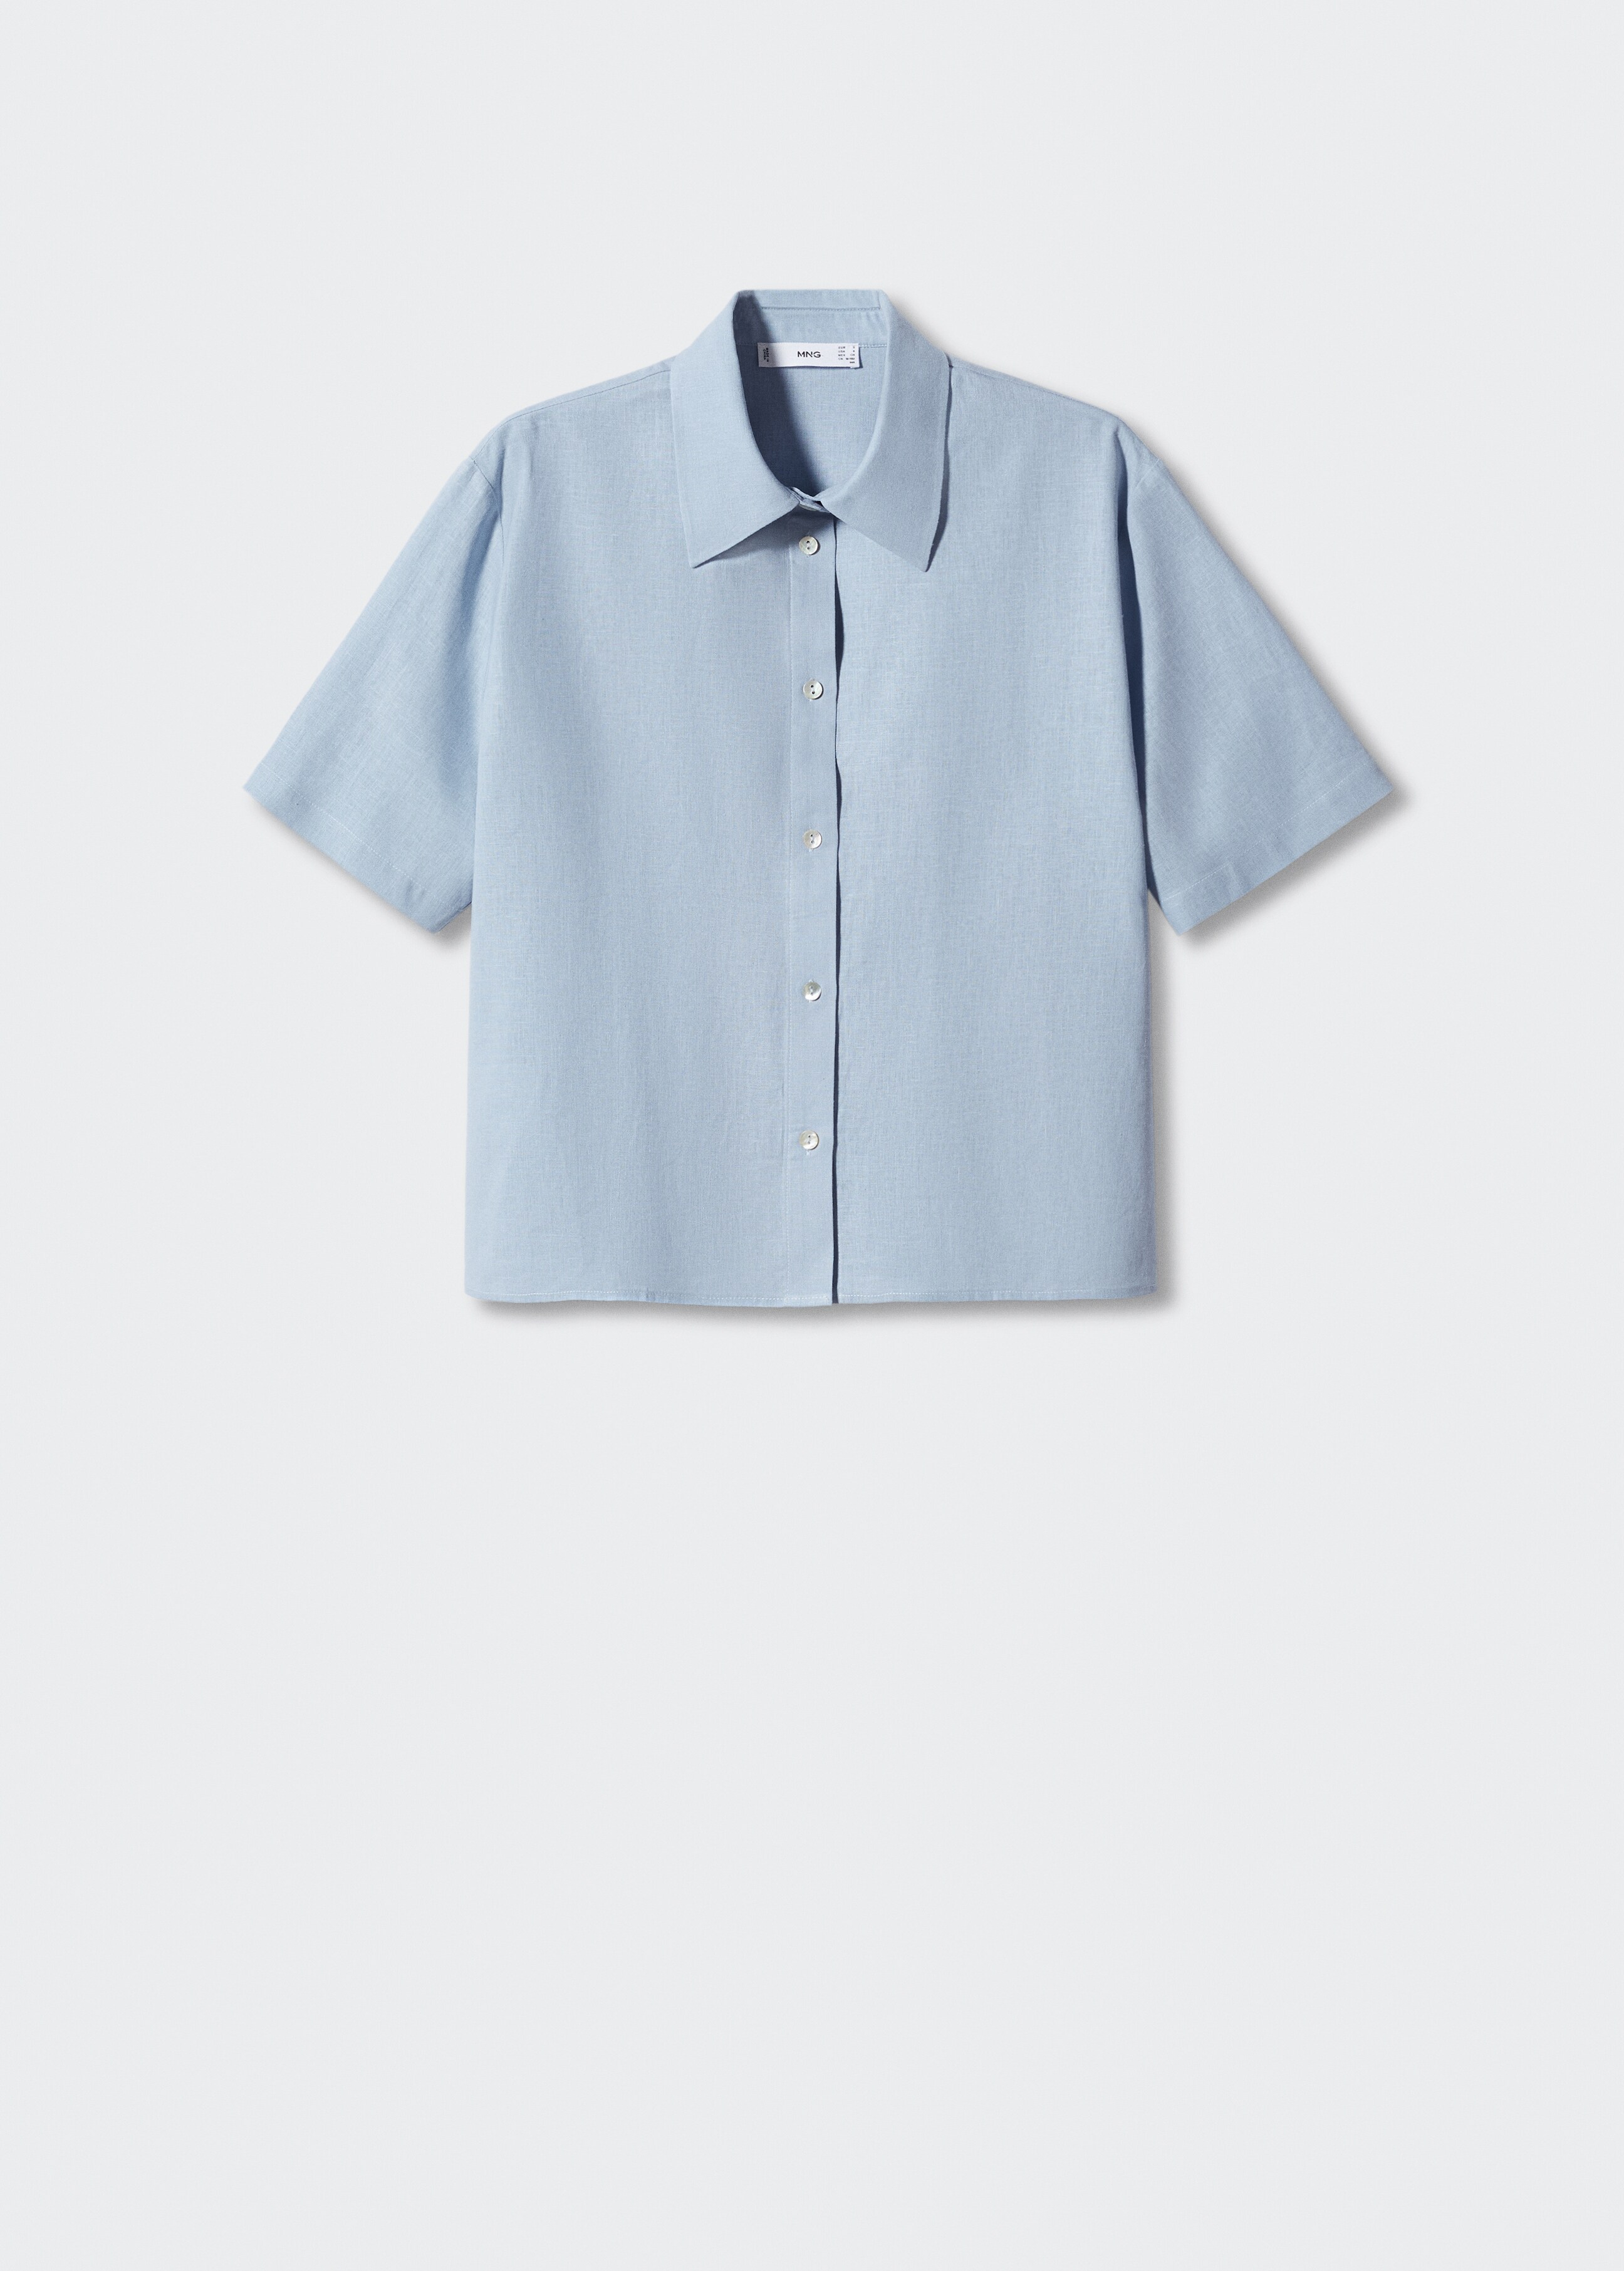 Lněná pyžamová košile - Zboží bez modelu